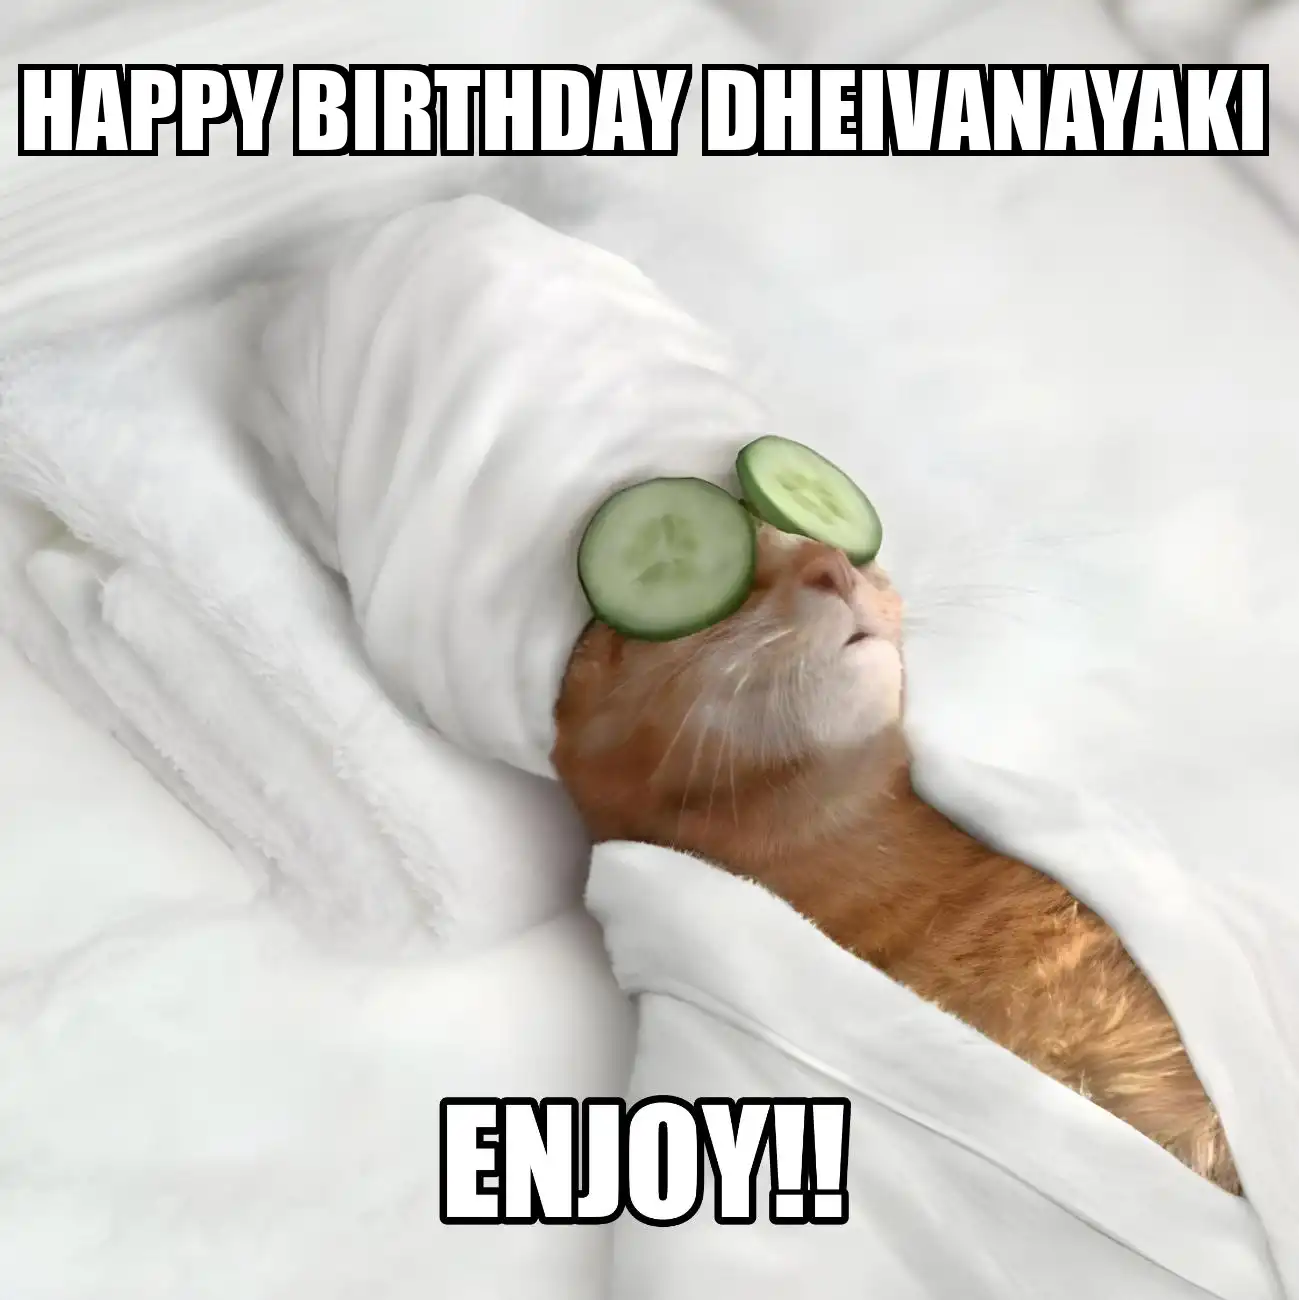 Happy Birthday Dheivanayaki Enjoy Cat Meme